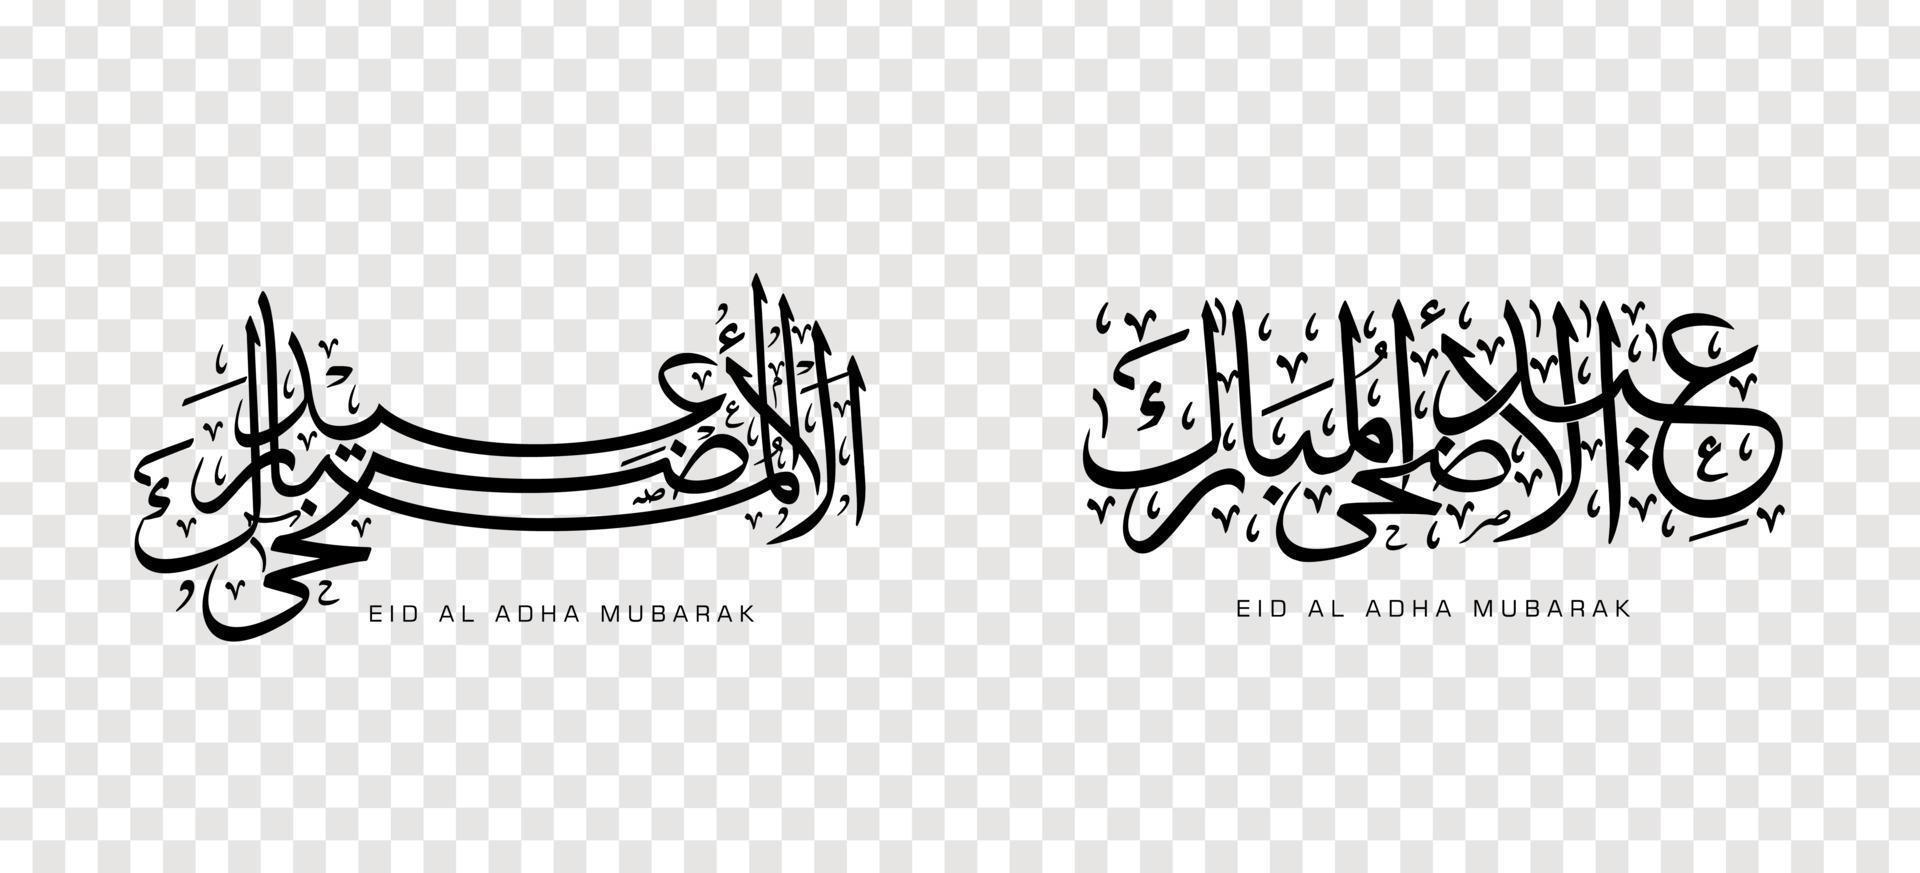 conjunto de eid adha mubarak en caligrafía árabe, elemento de diseño sobre un fondo transparente. ilustración vectorial vector